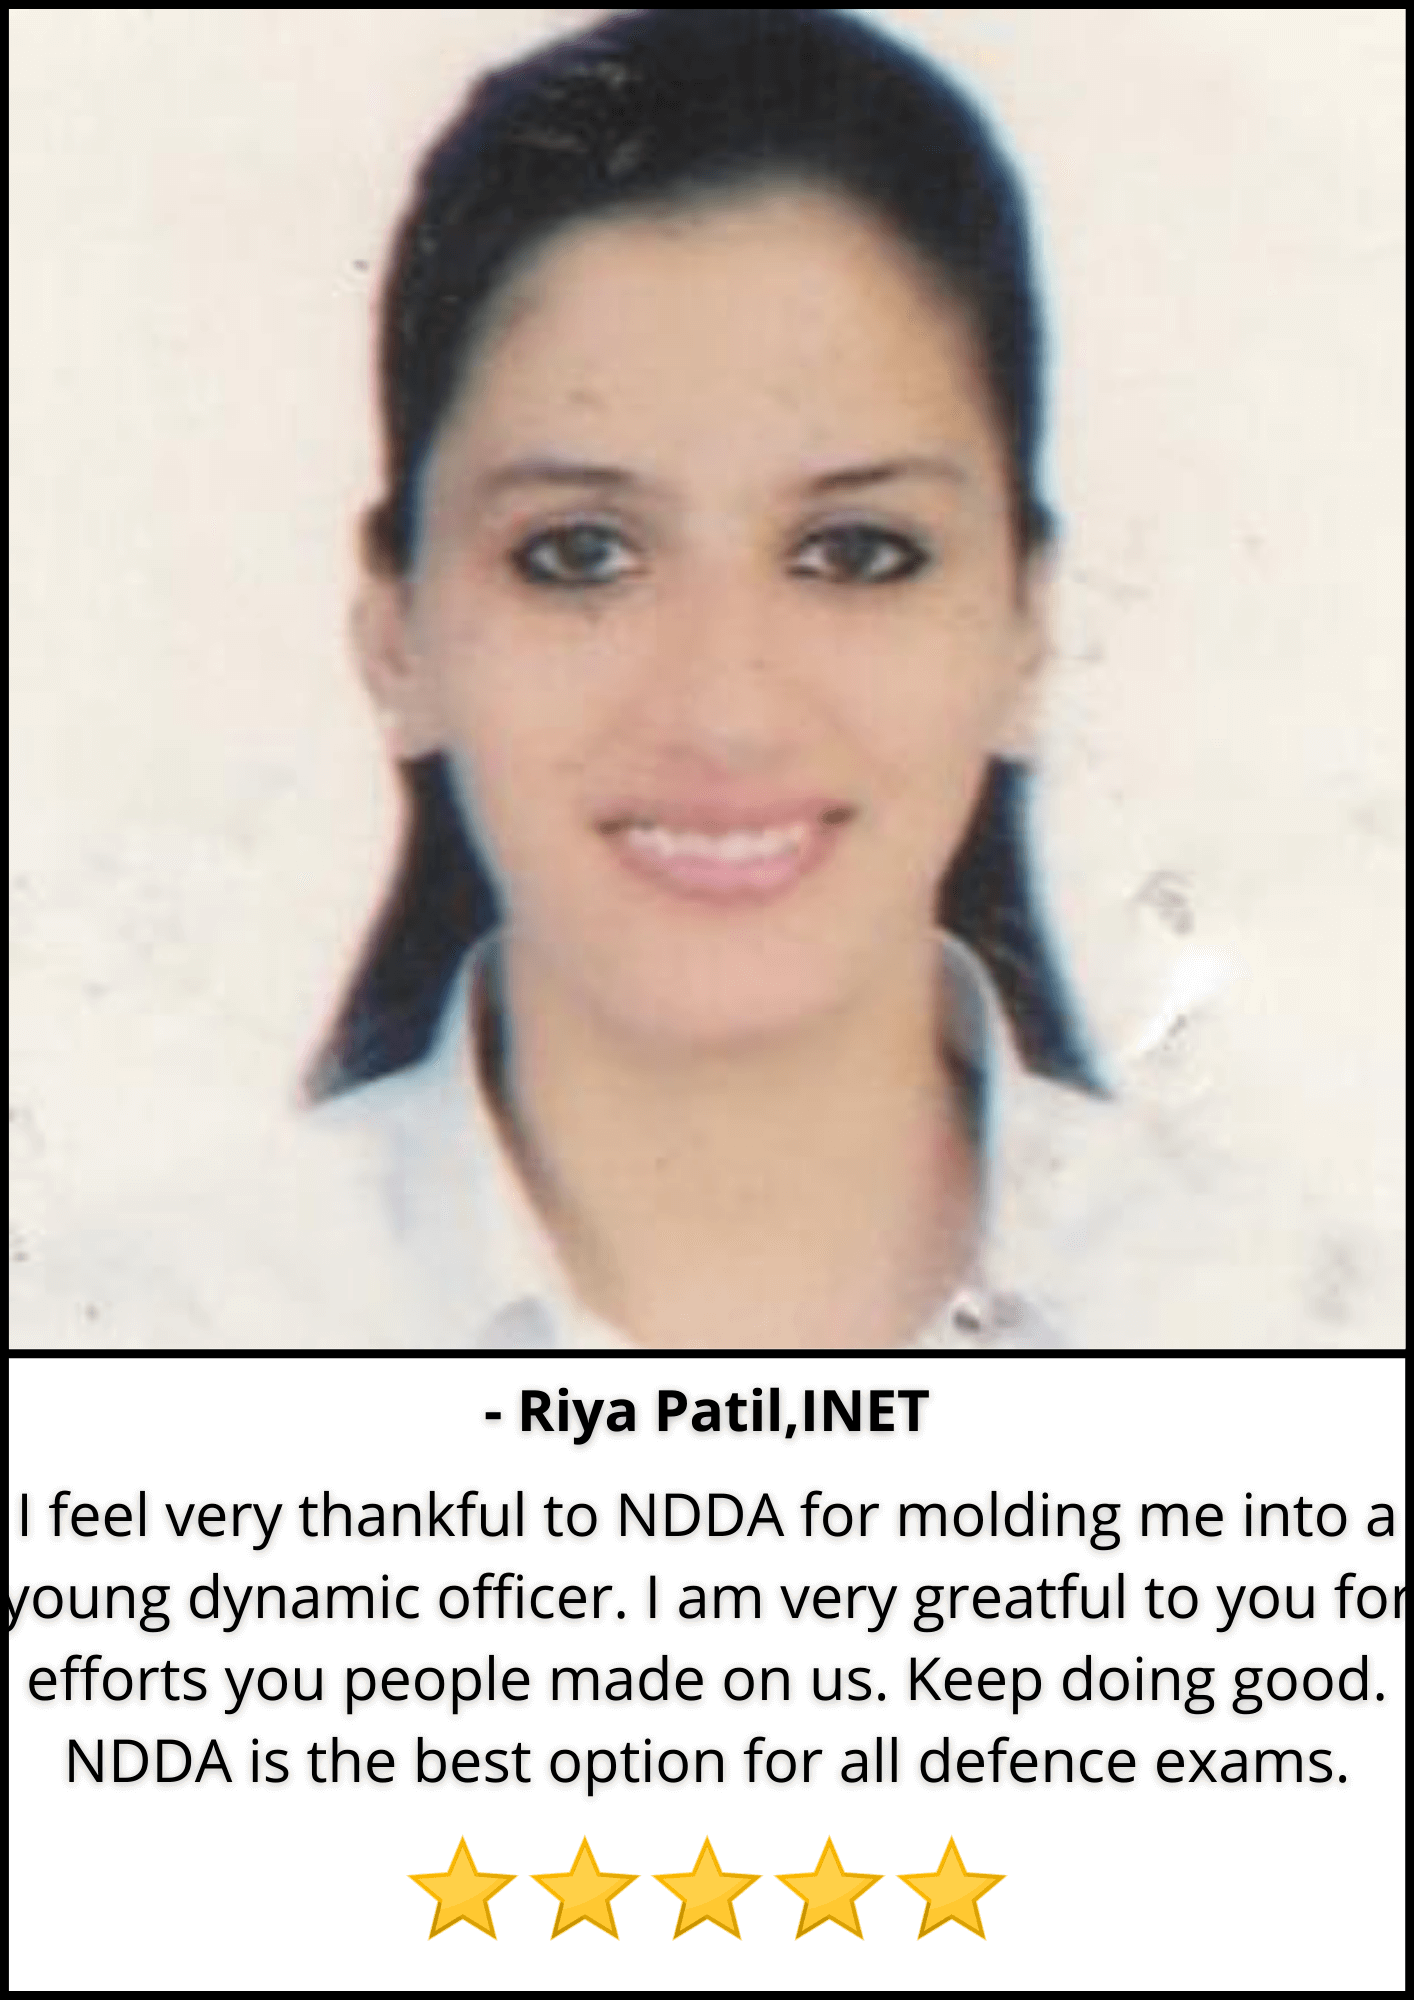 Riya Patil, INET